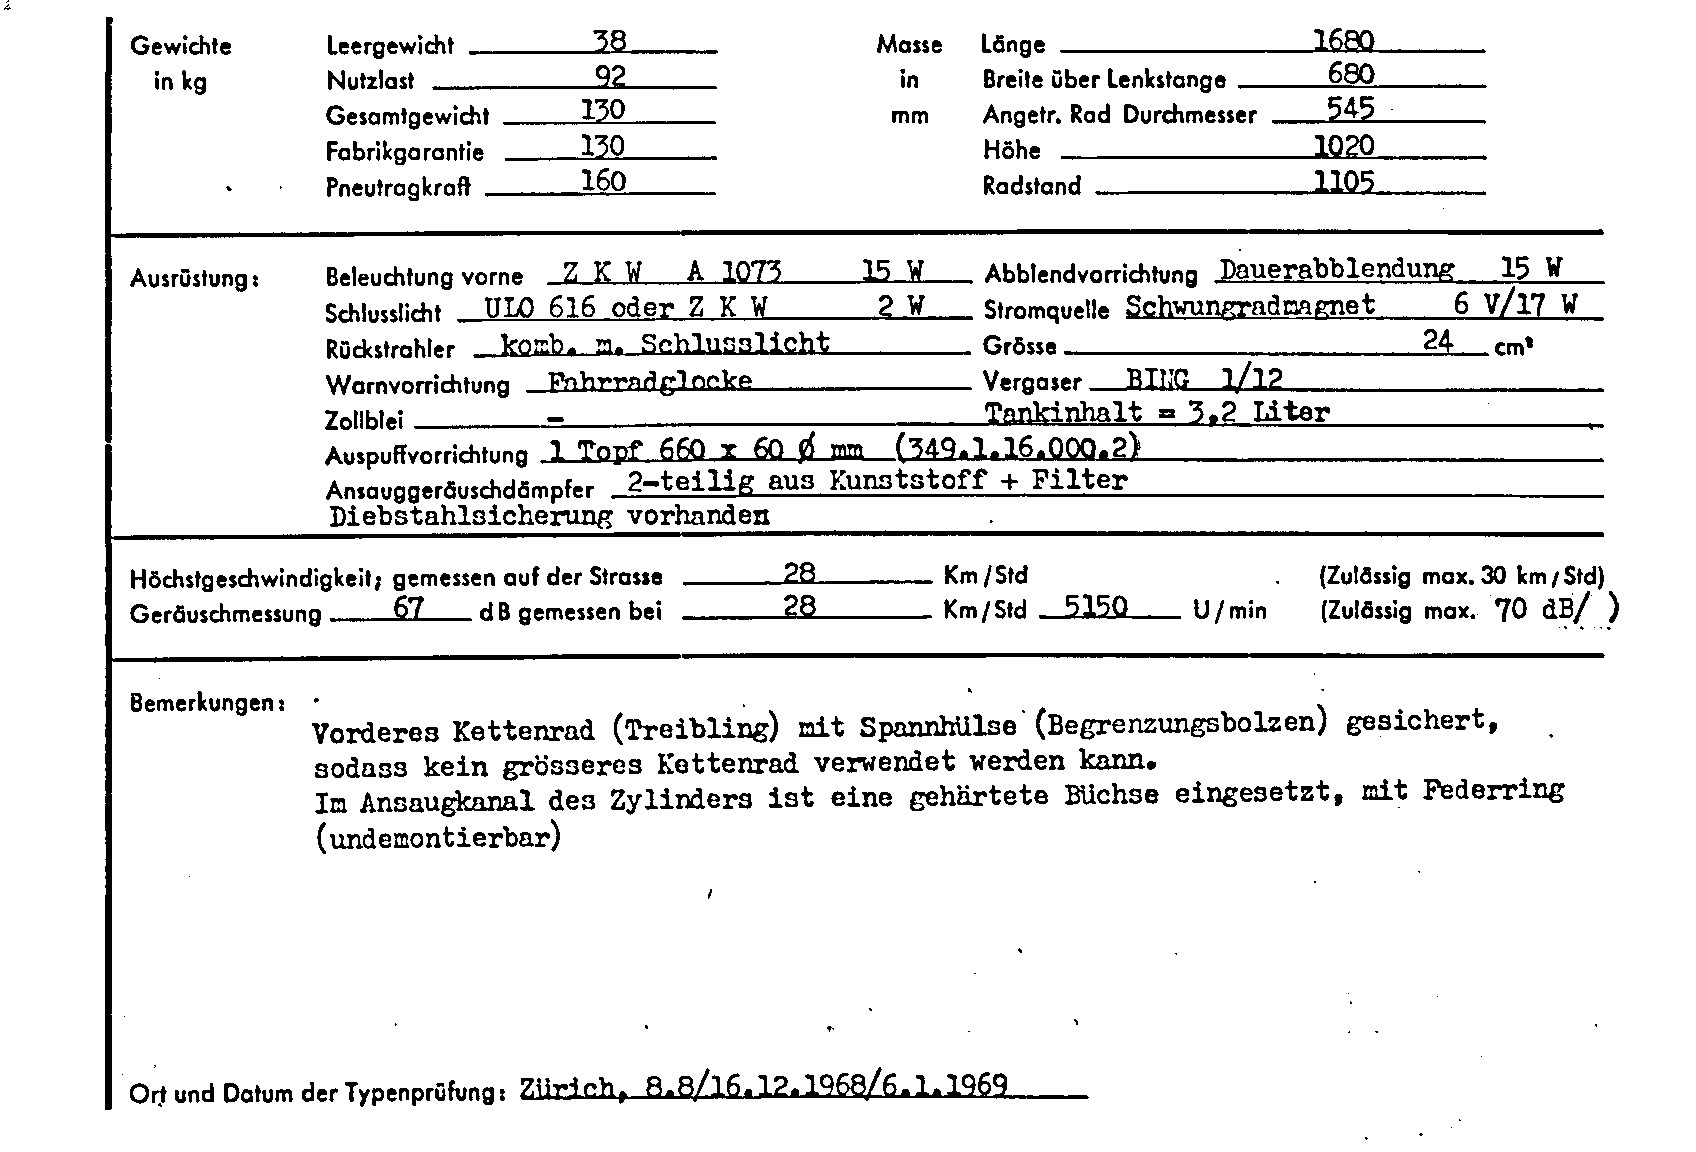 Schweizer Typenschein 7029 Deutsch Seite 2 (TG.DE.7029.2.png)